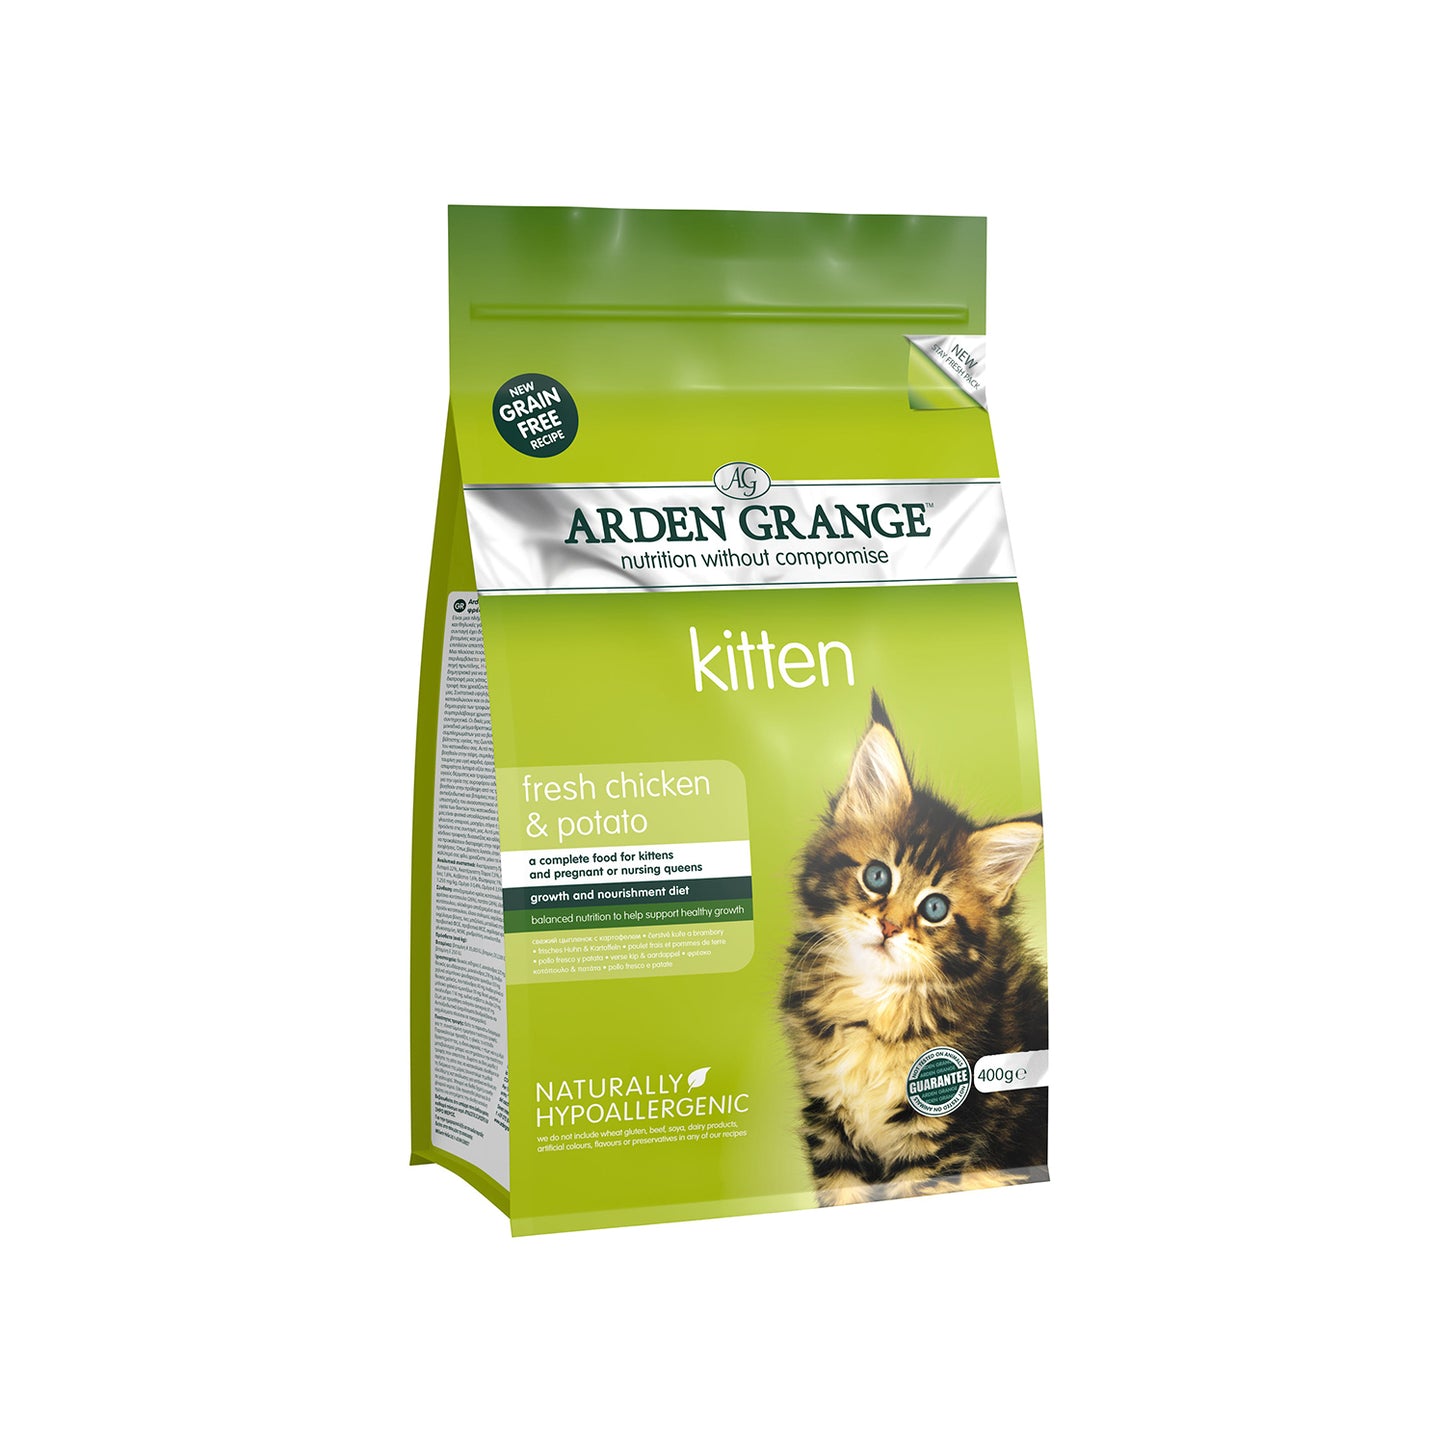 Arden Grange - Kitten Dry Food